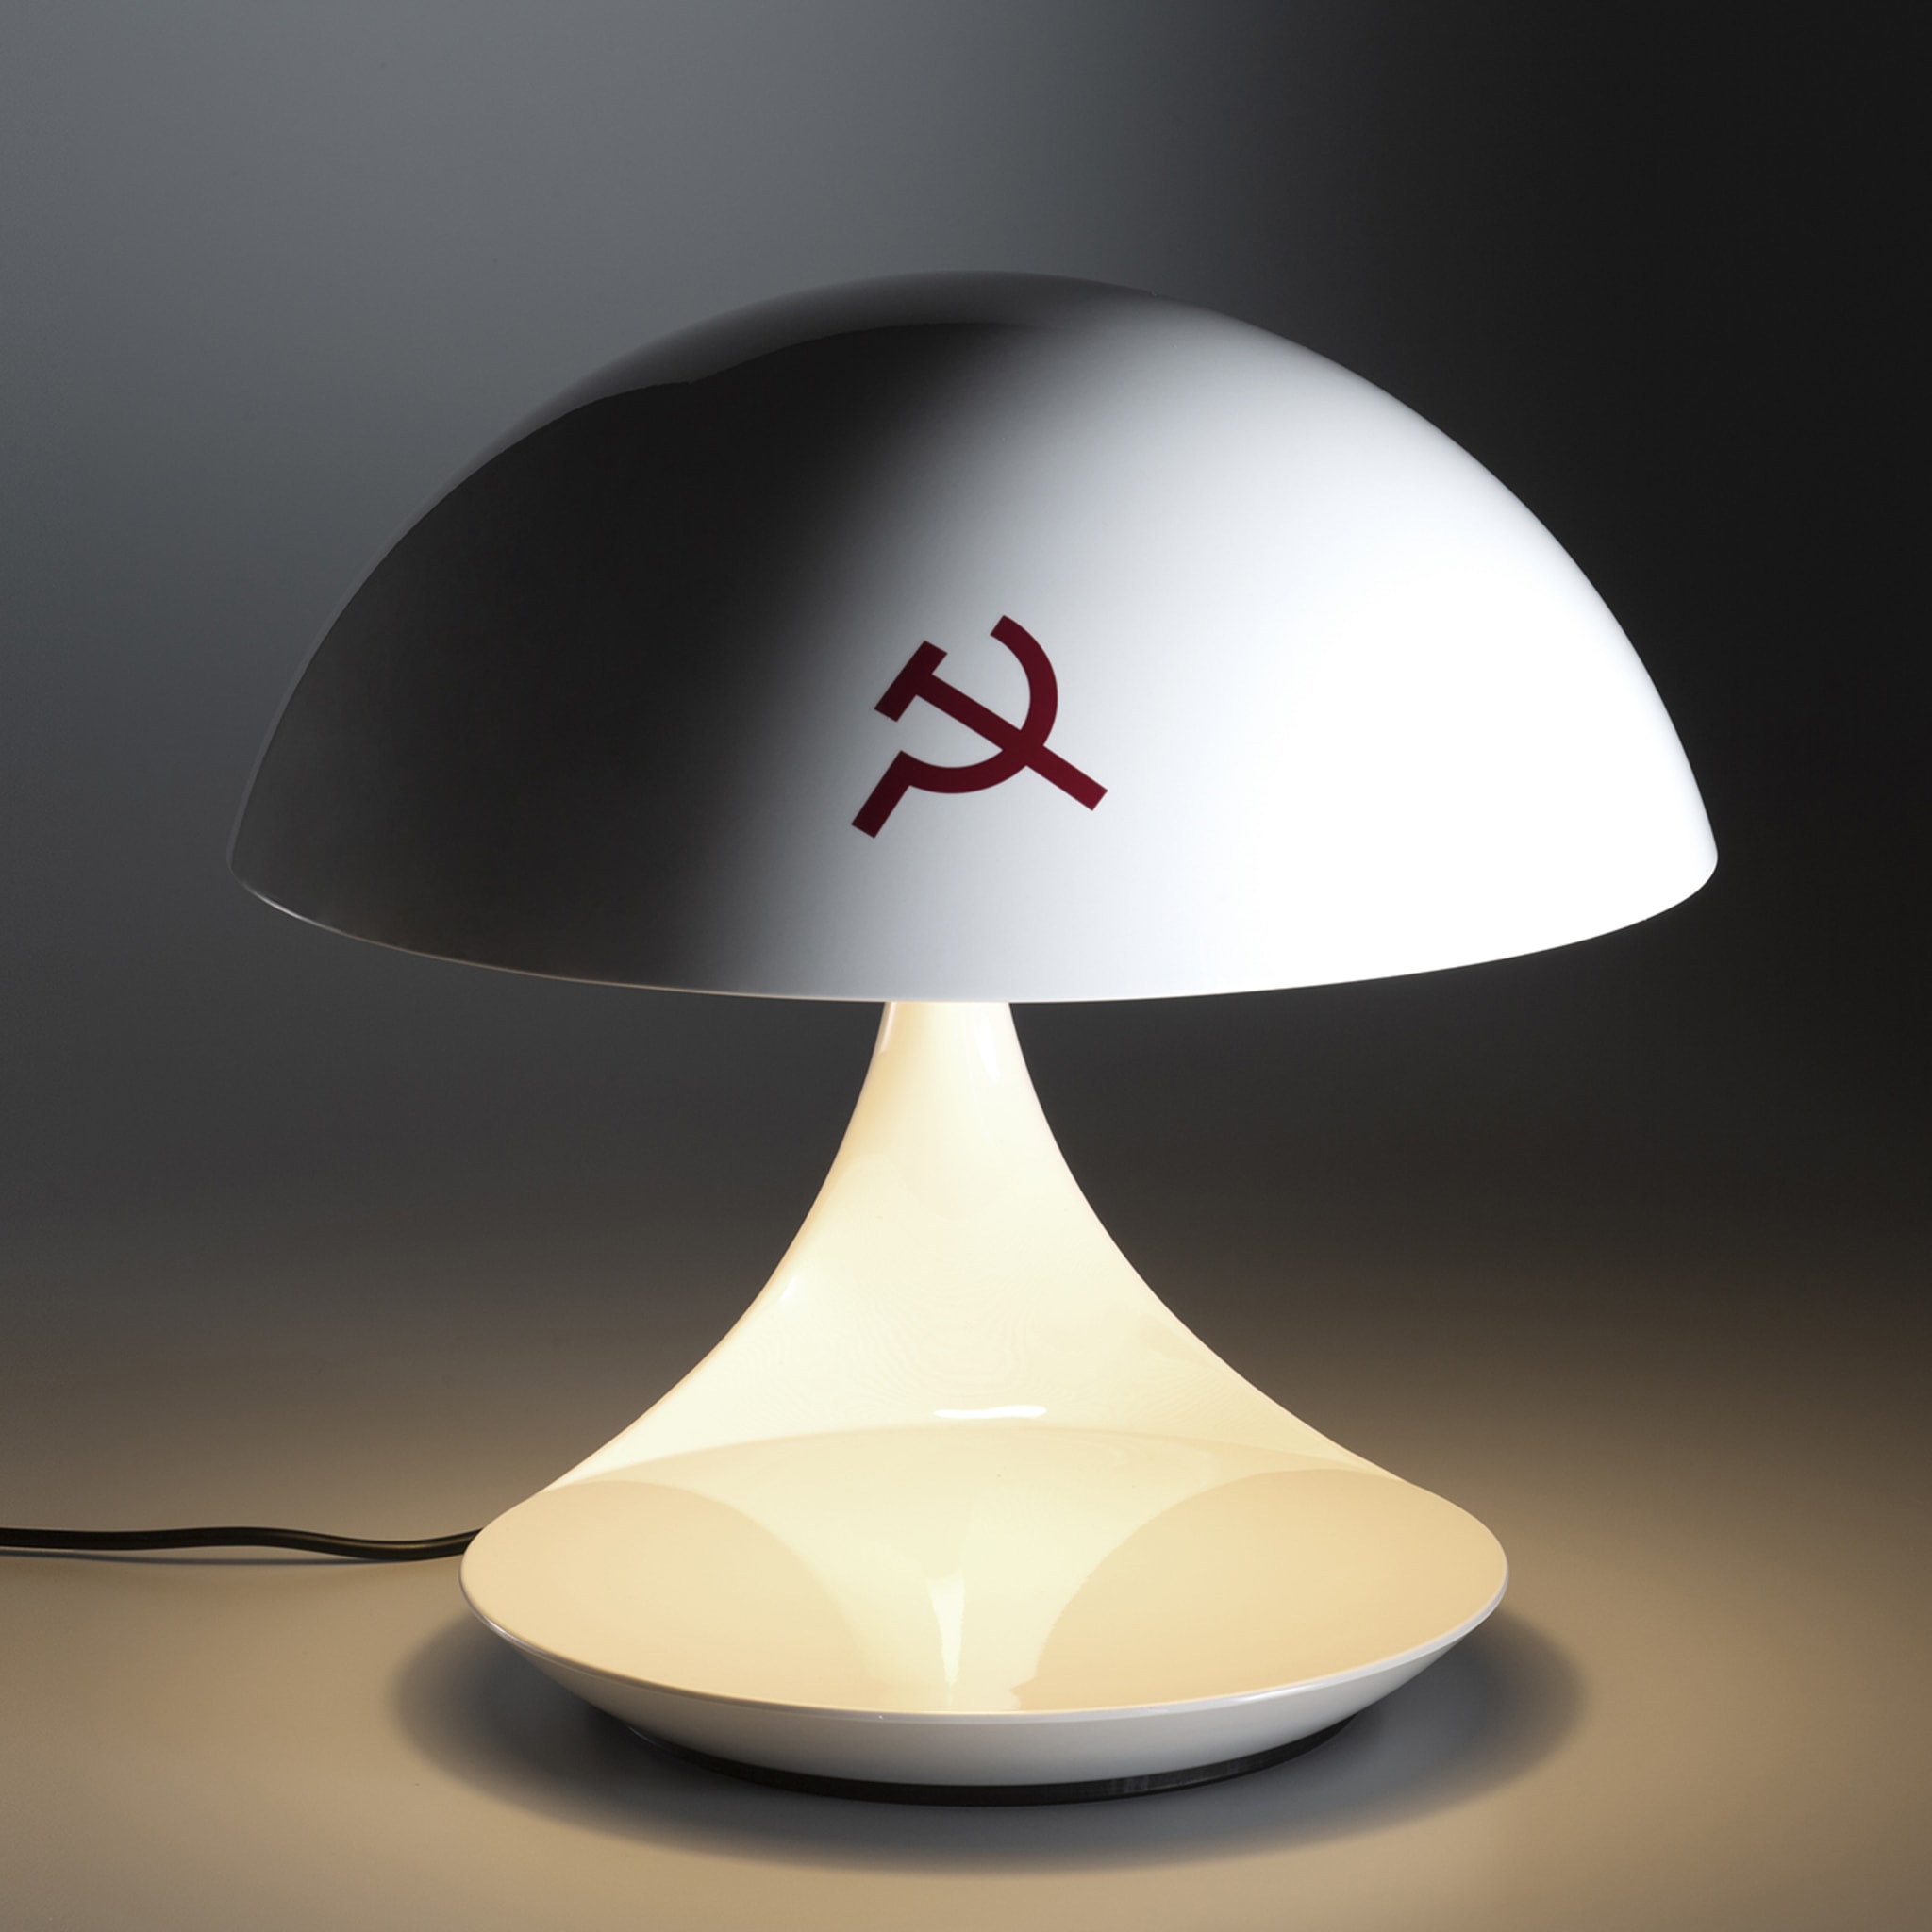 Cobra Texture Pensando Al Comunismo Table Lamp by A. Mendini - Alternative view 2